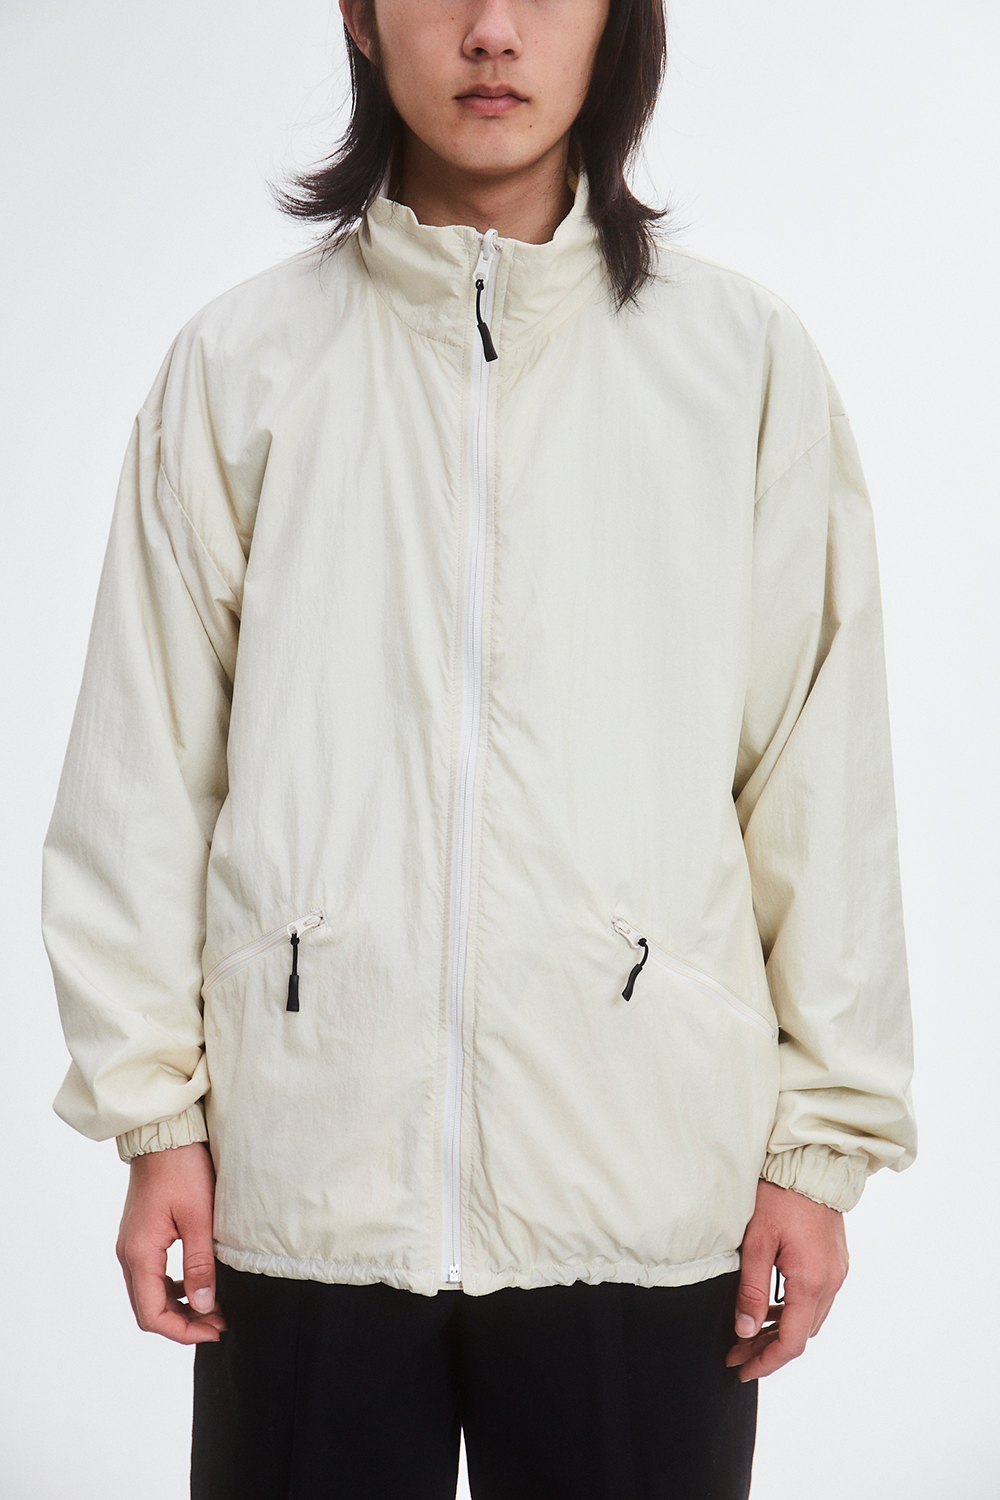 sheba packable jacket white×ivory